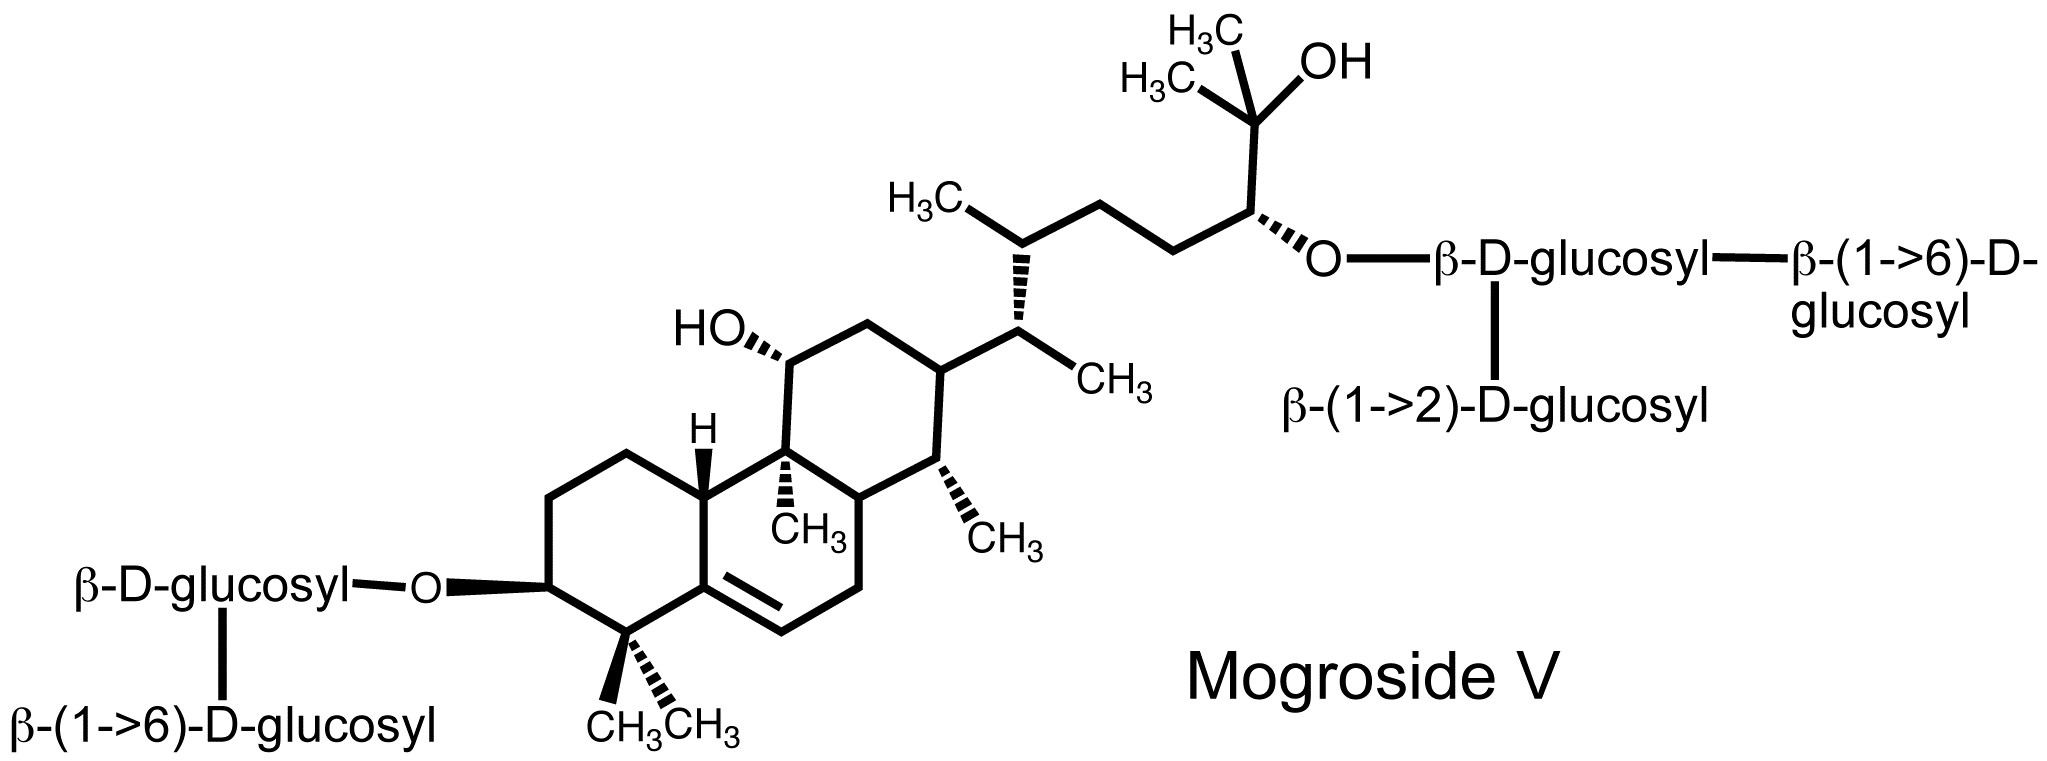 mogroside-V